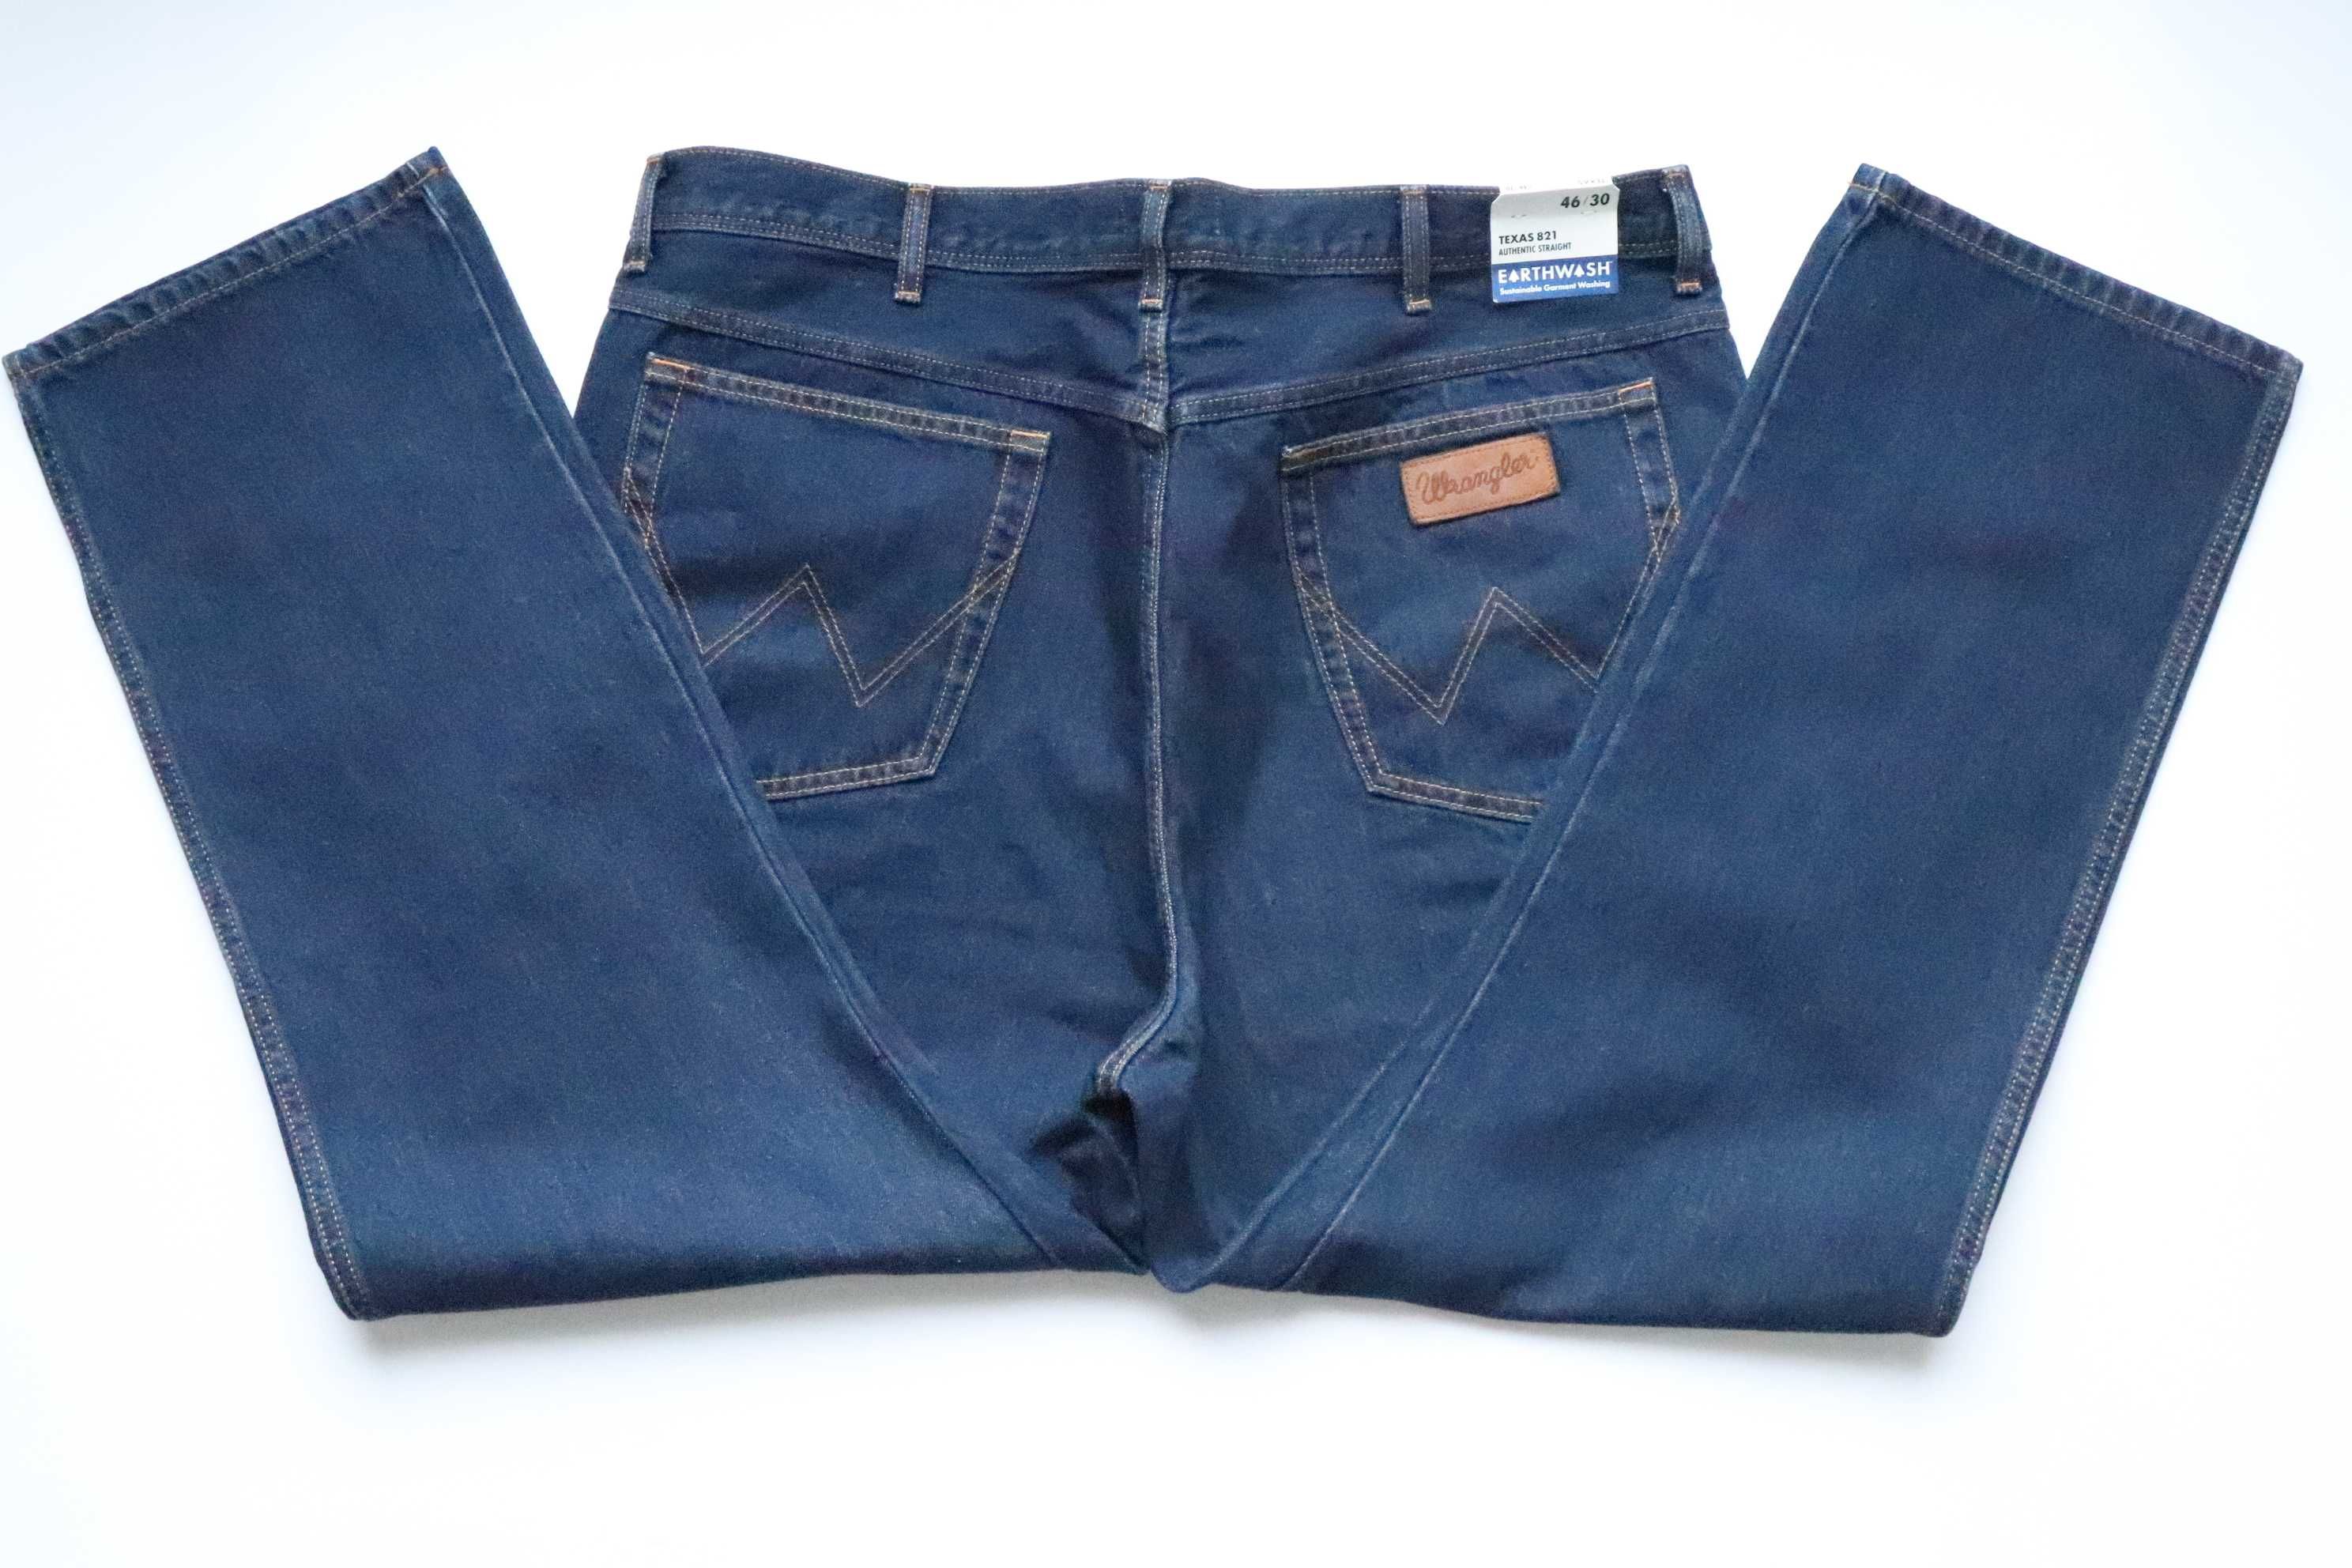 WRANGLER TEXAS W46 L30 regular straight spodnie męskie jeansy nowe